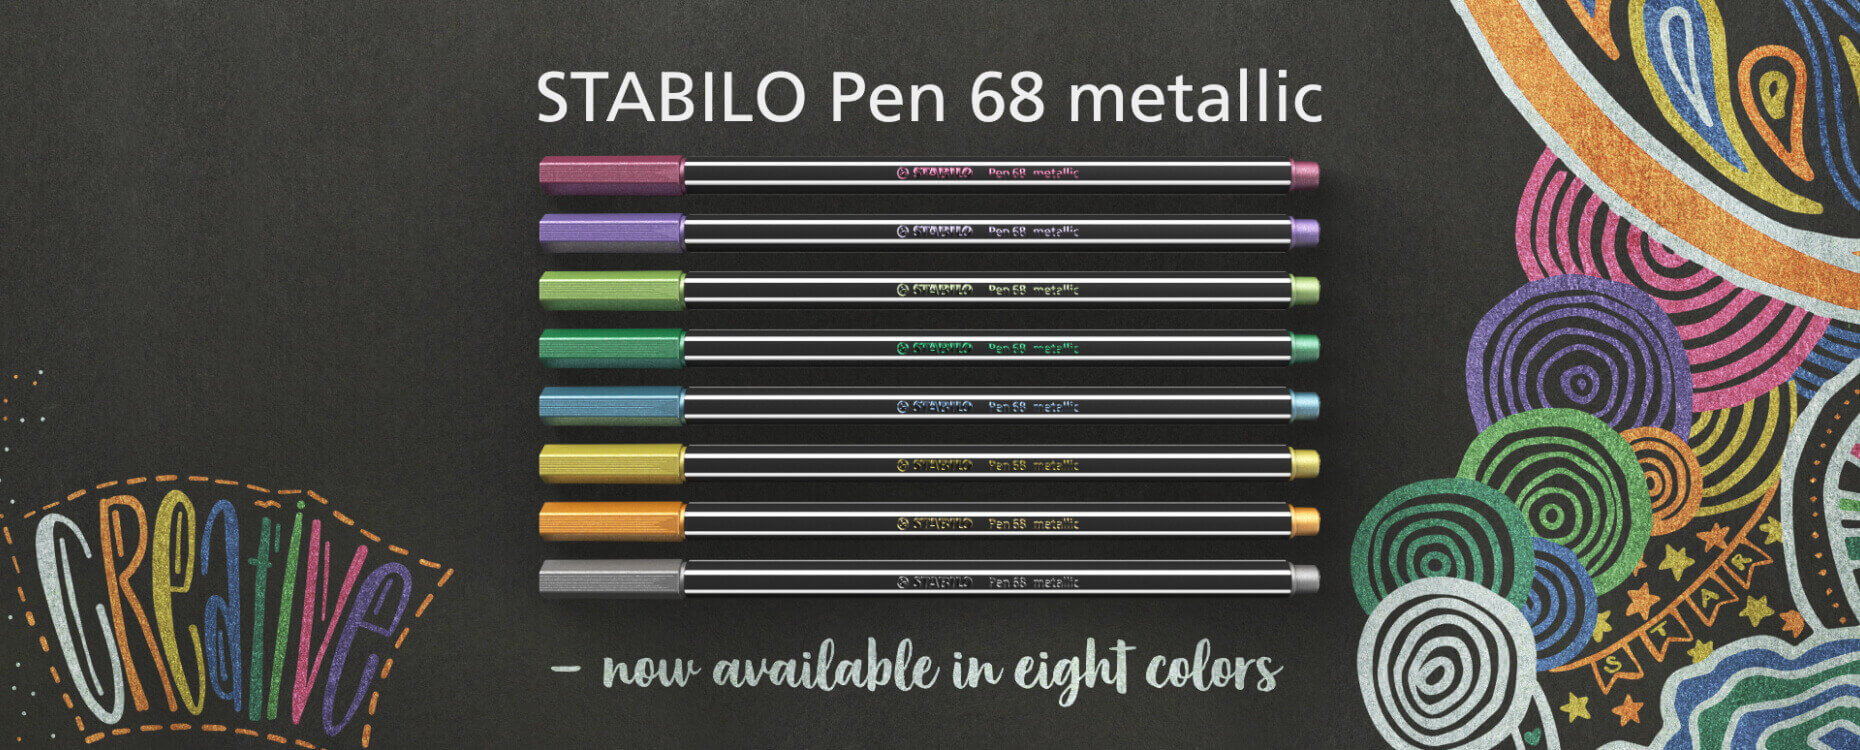 wastafel Landelijk Voorspellen STABILO Pen 68 metallic - www.stabilo.ch